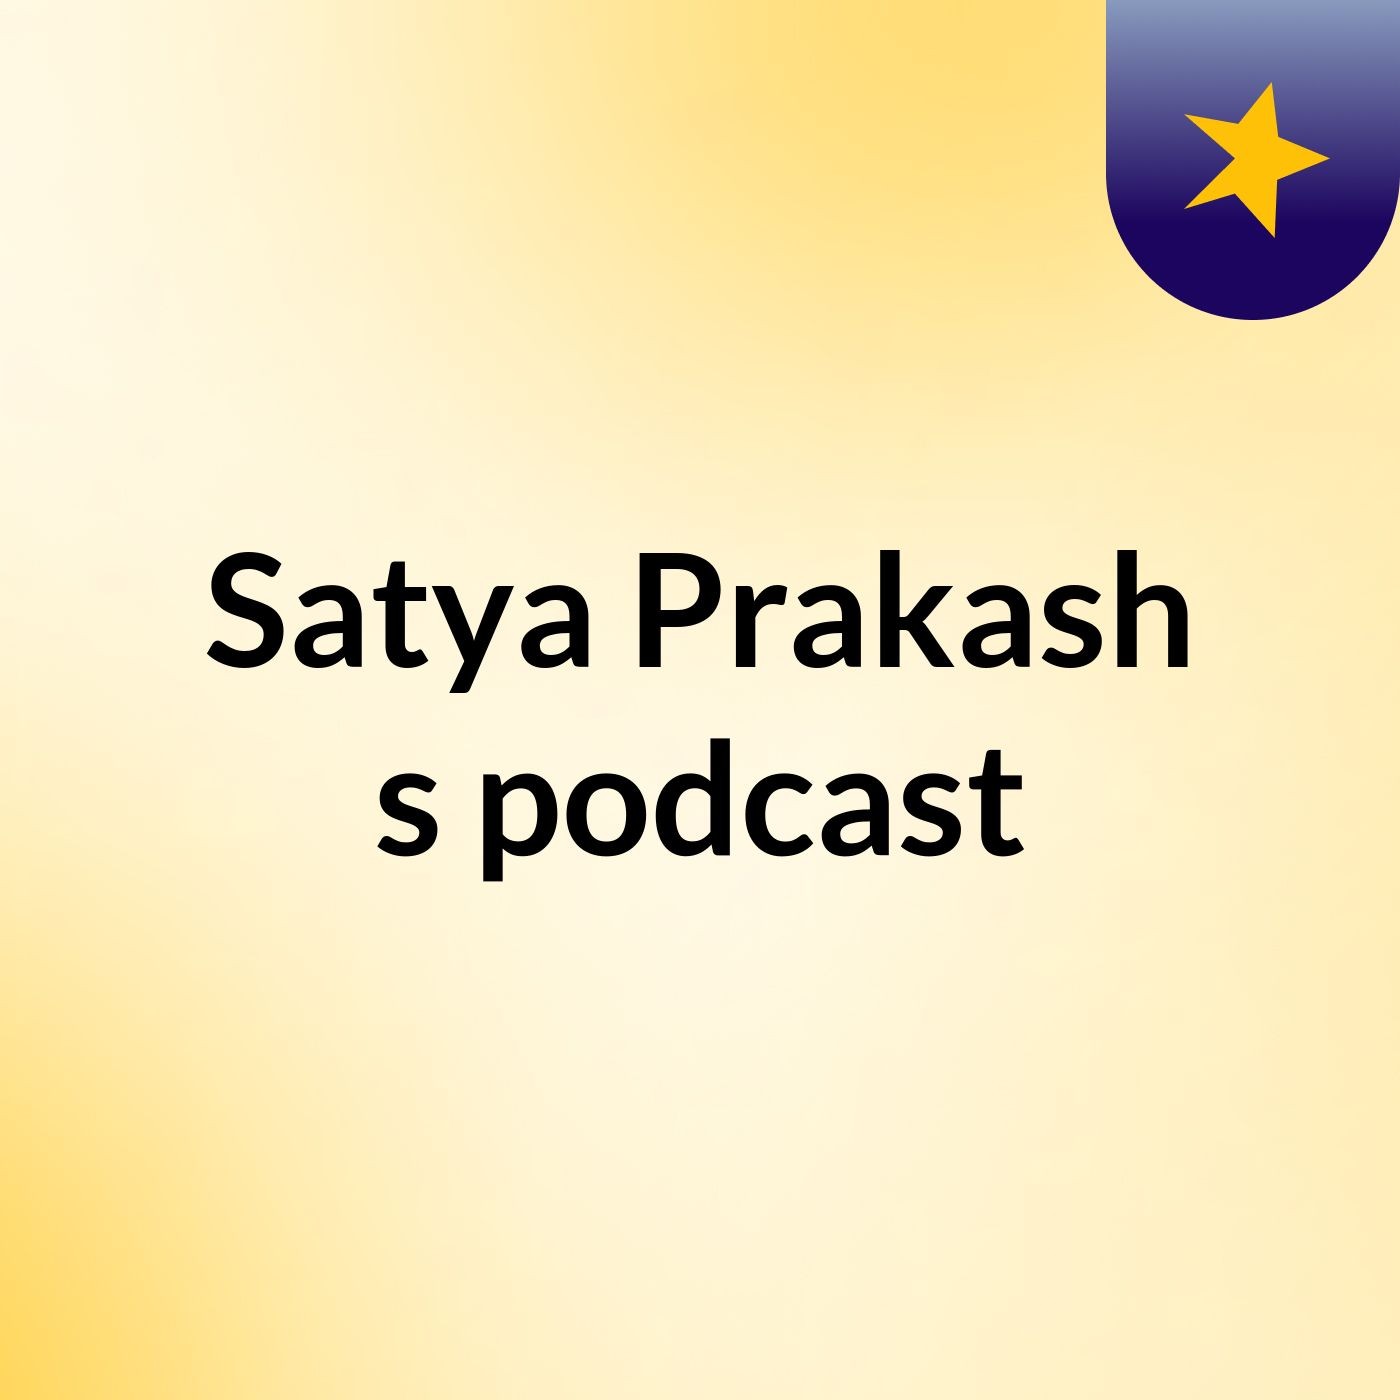 Episode 3 - Satya Prakash's podcast